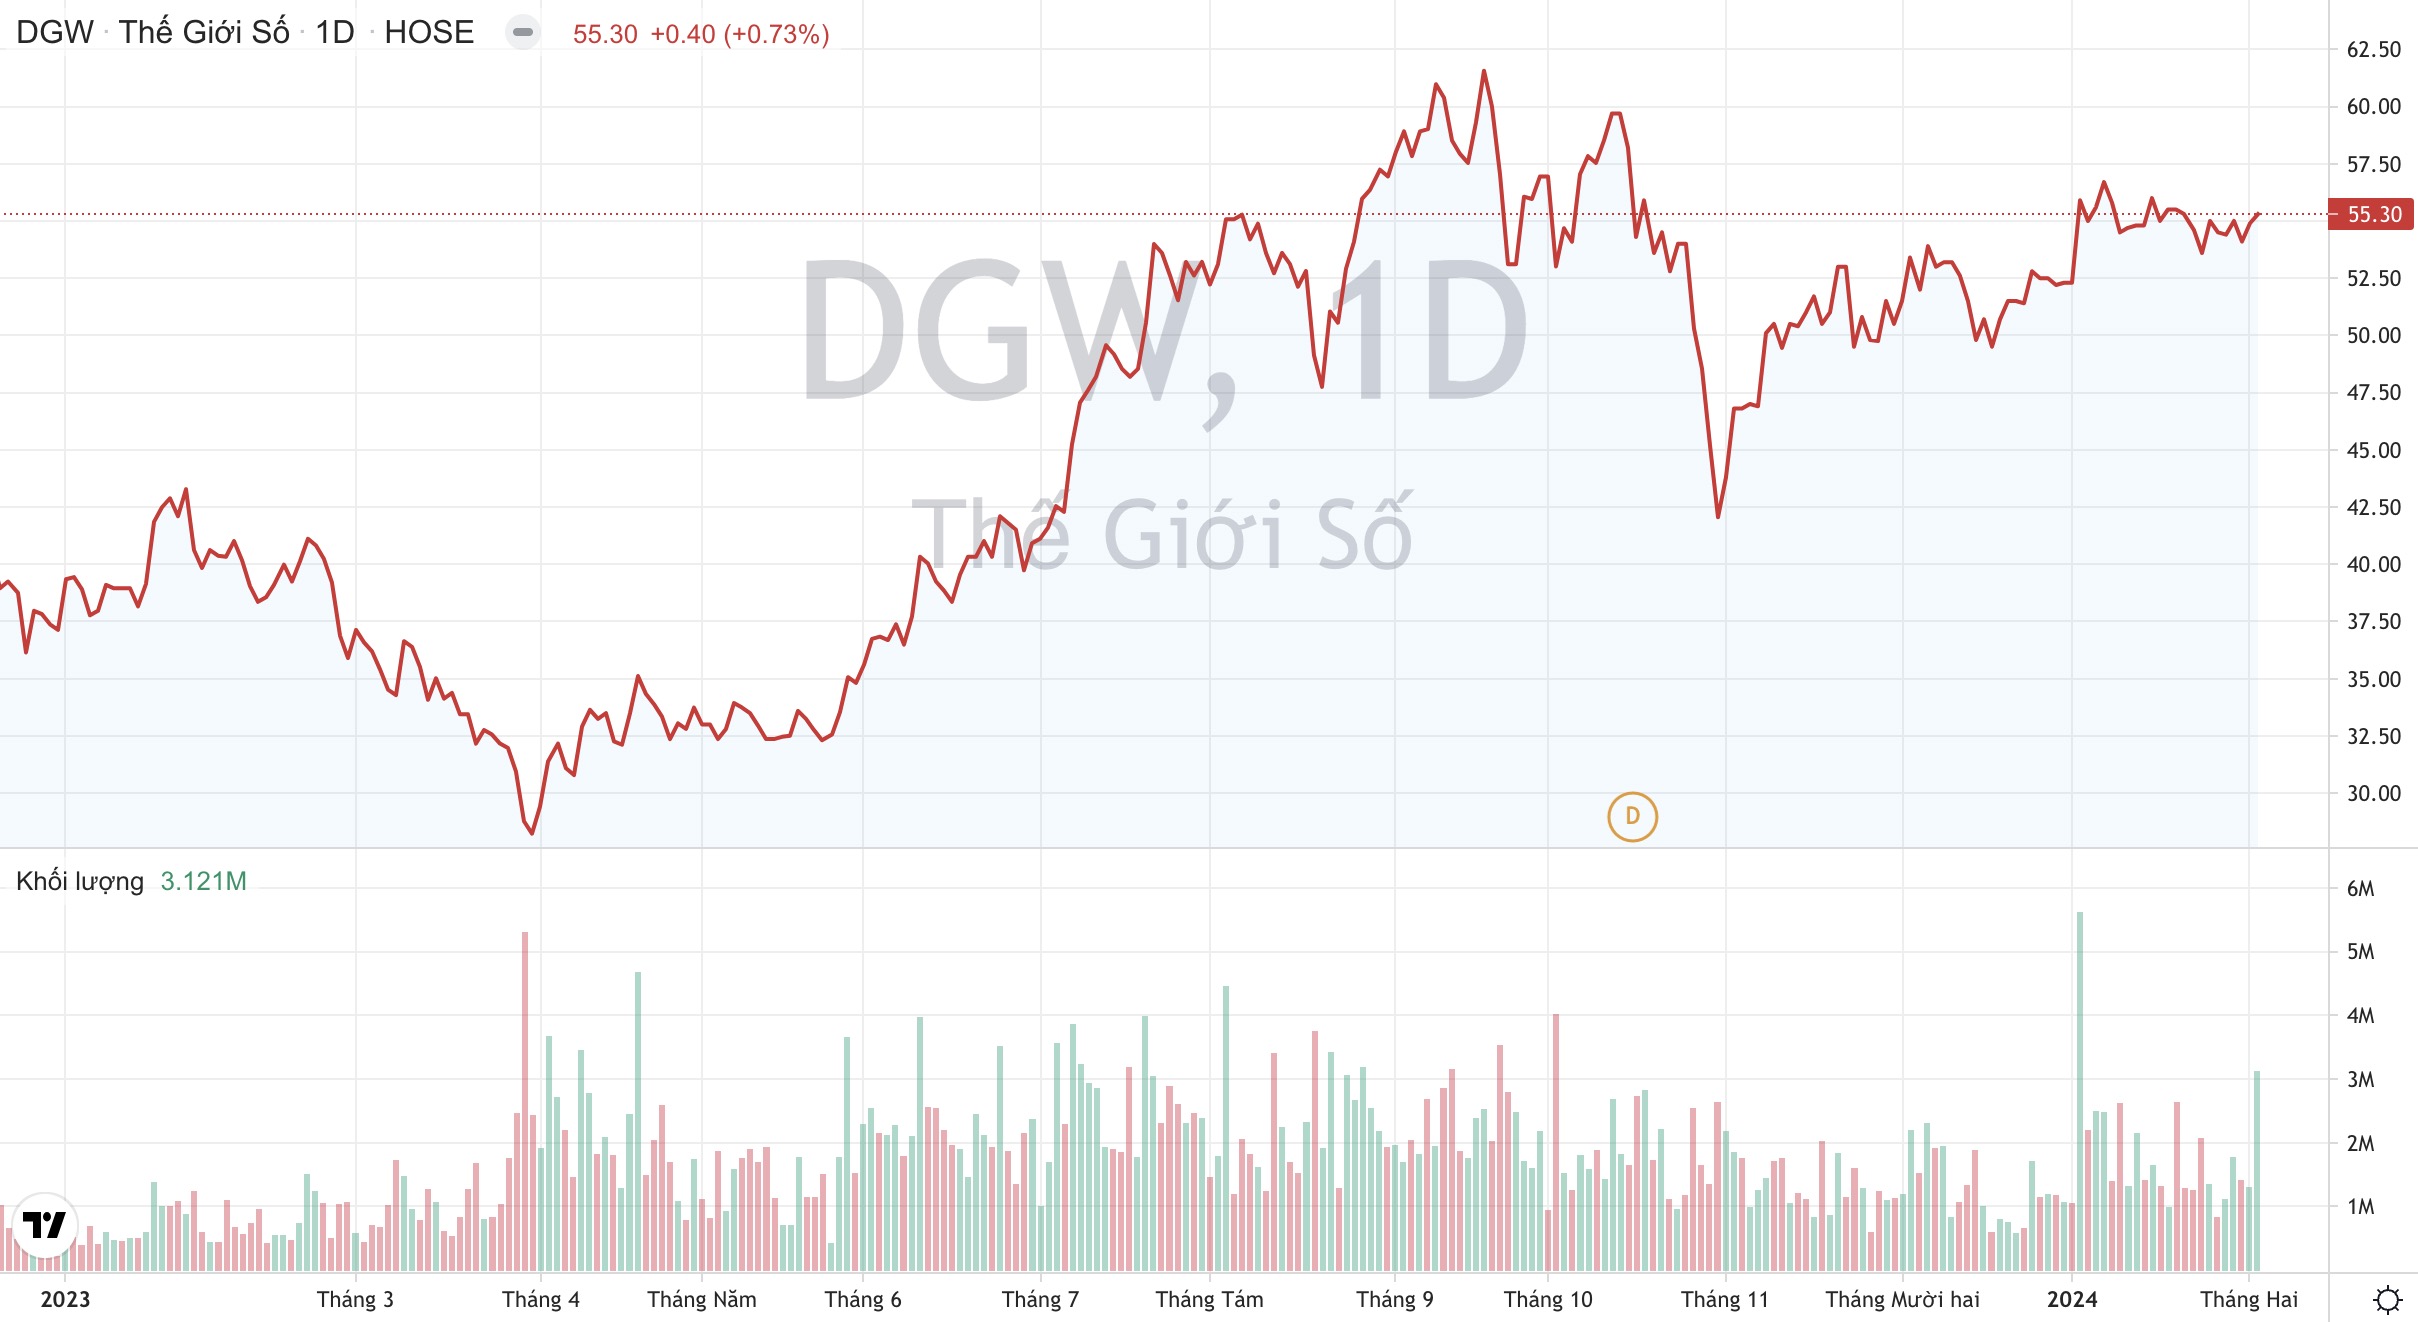 Giá cổ phiếu DGW Thế Giới Số